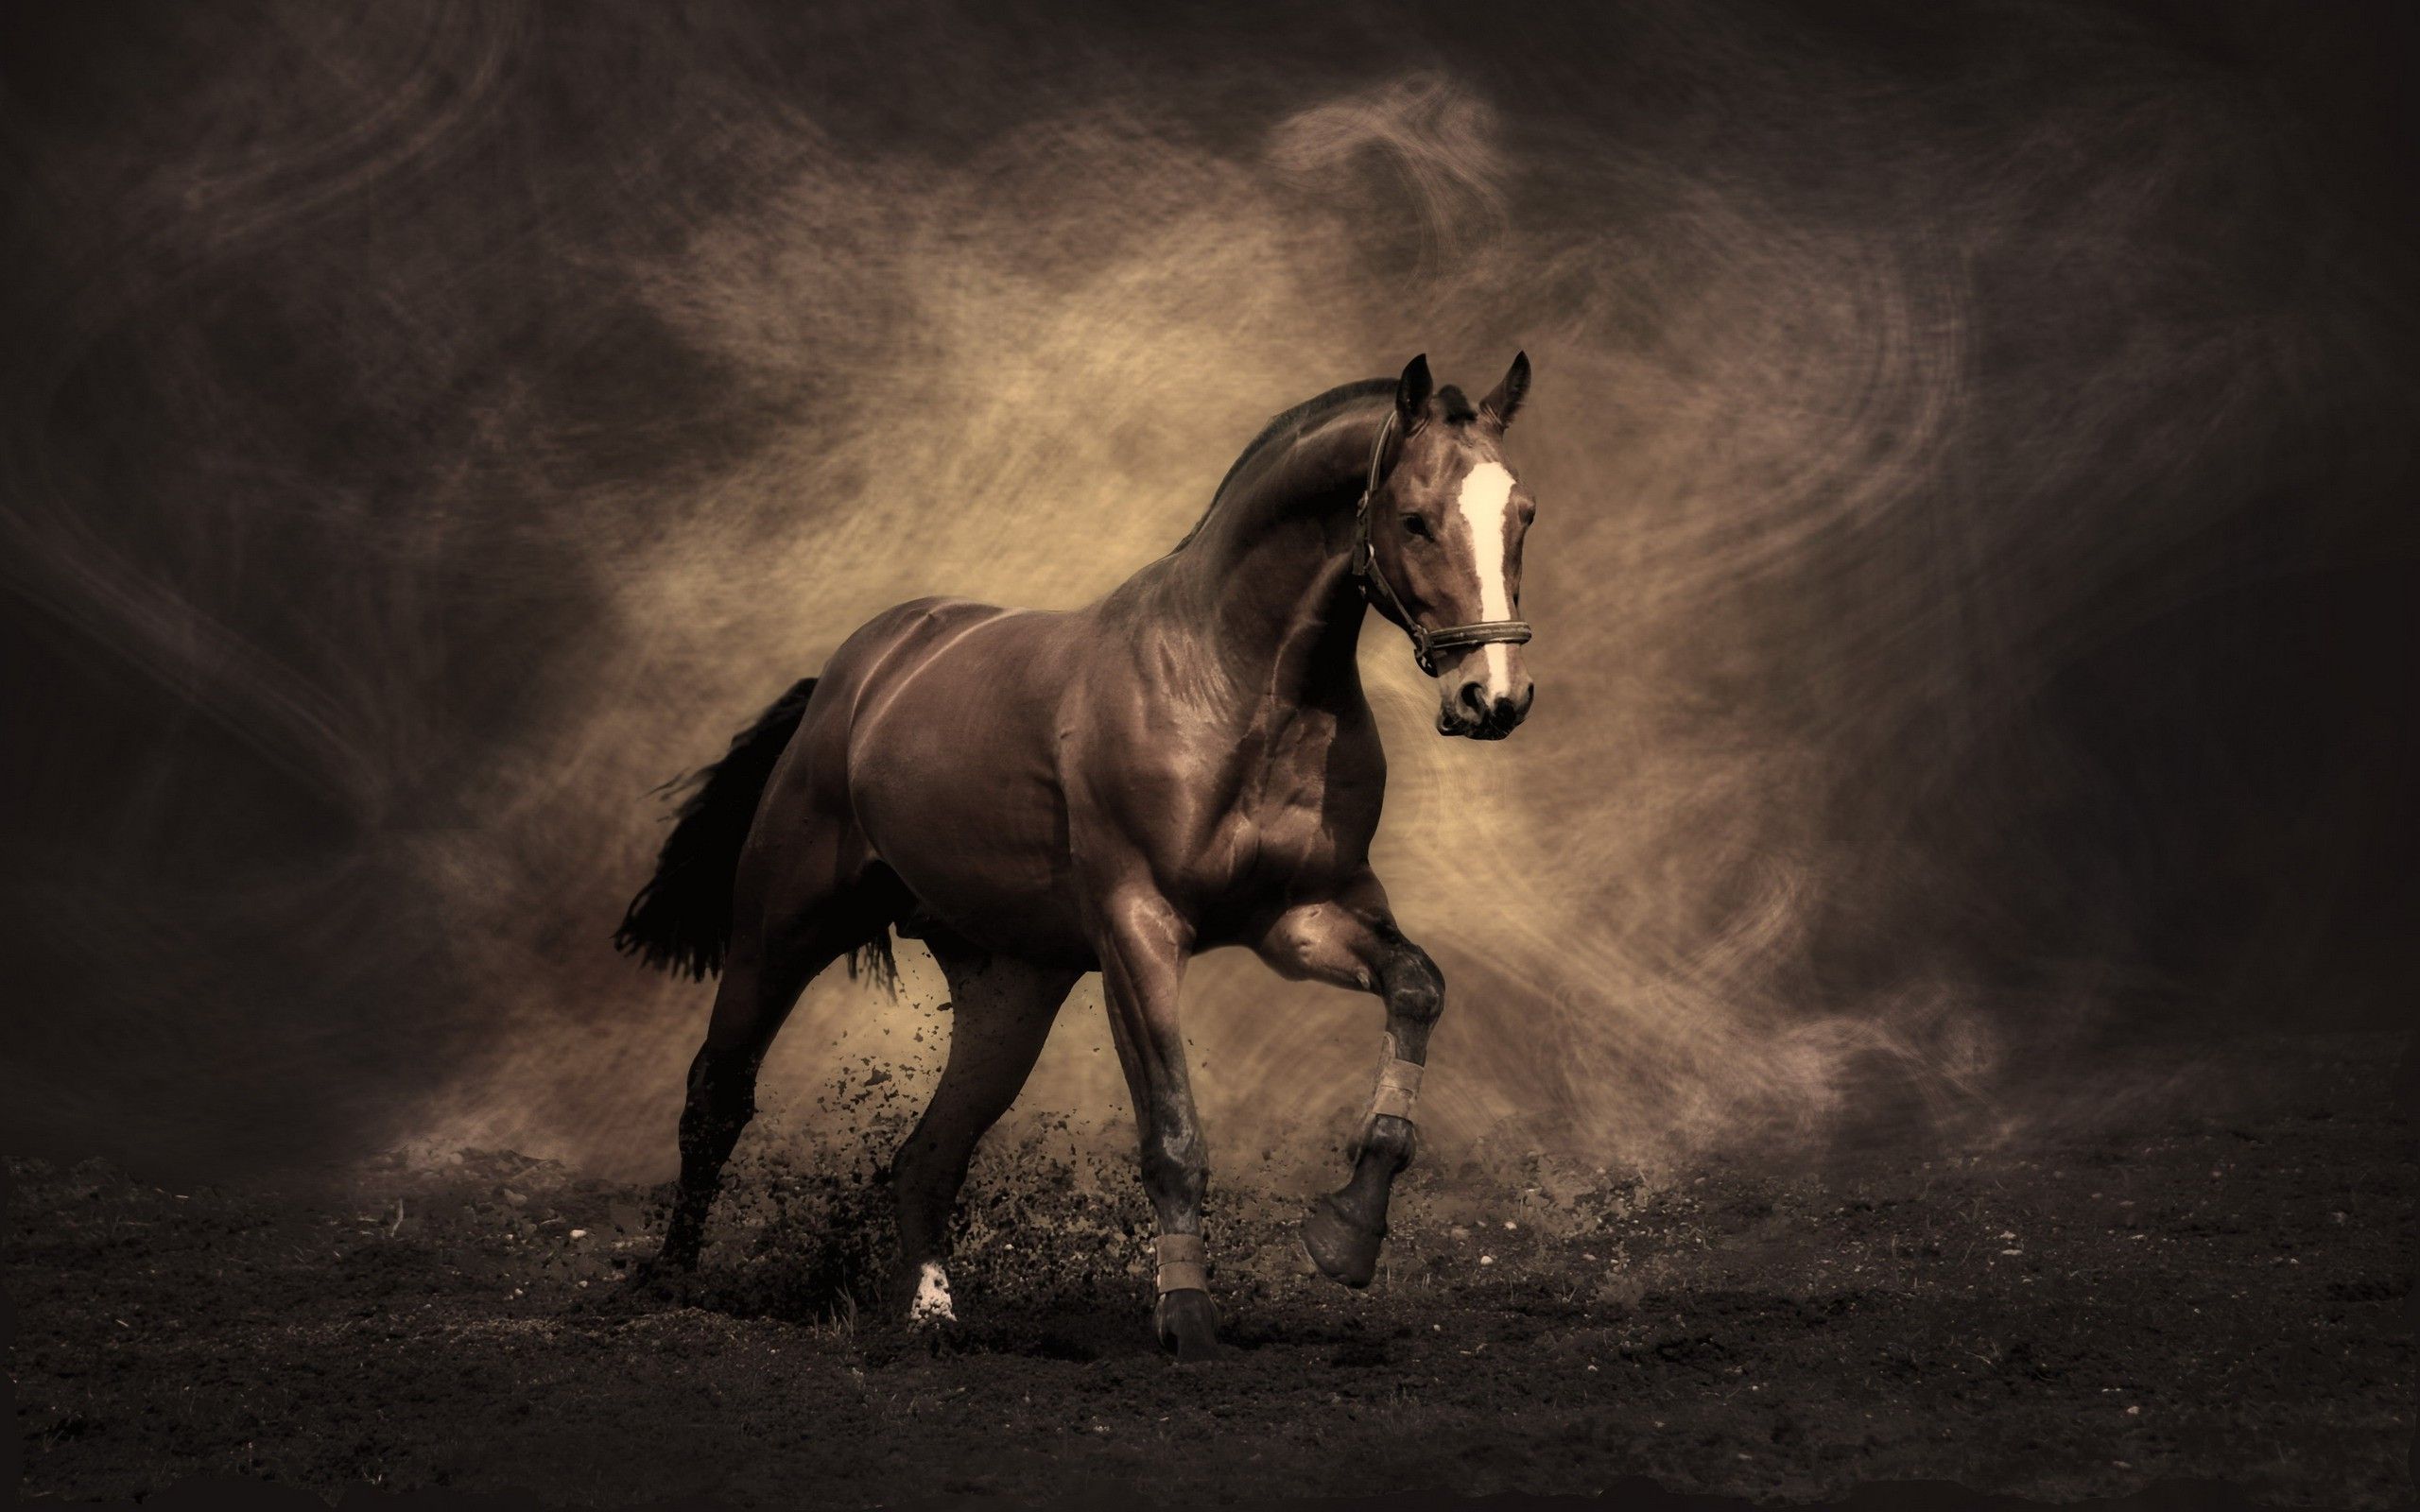 amazing hd horse image